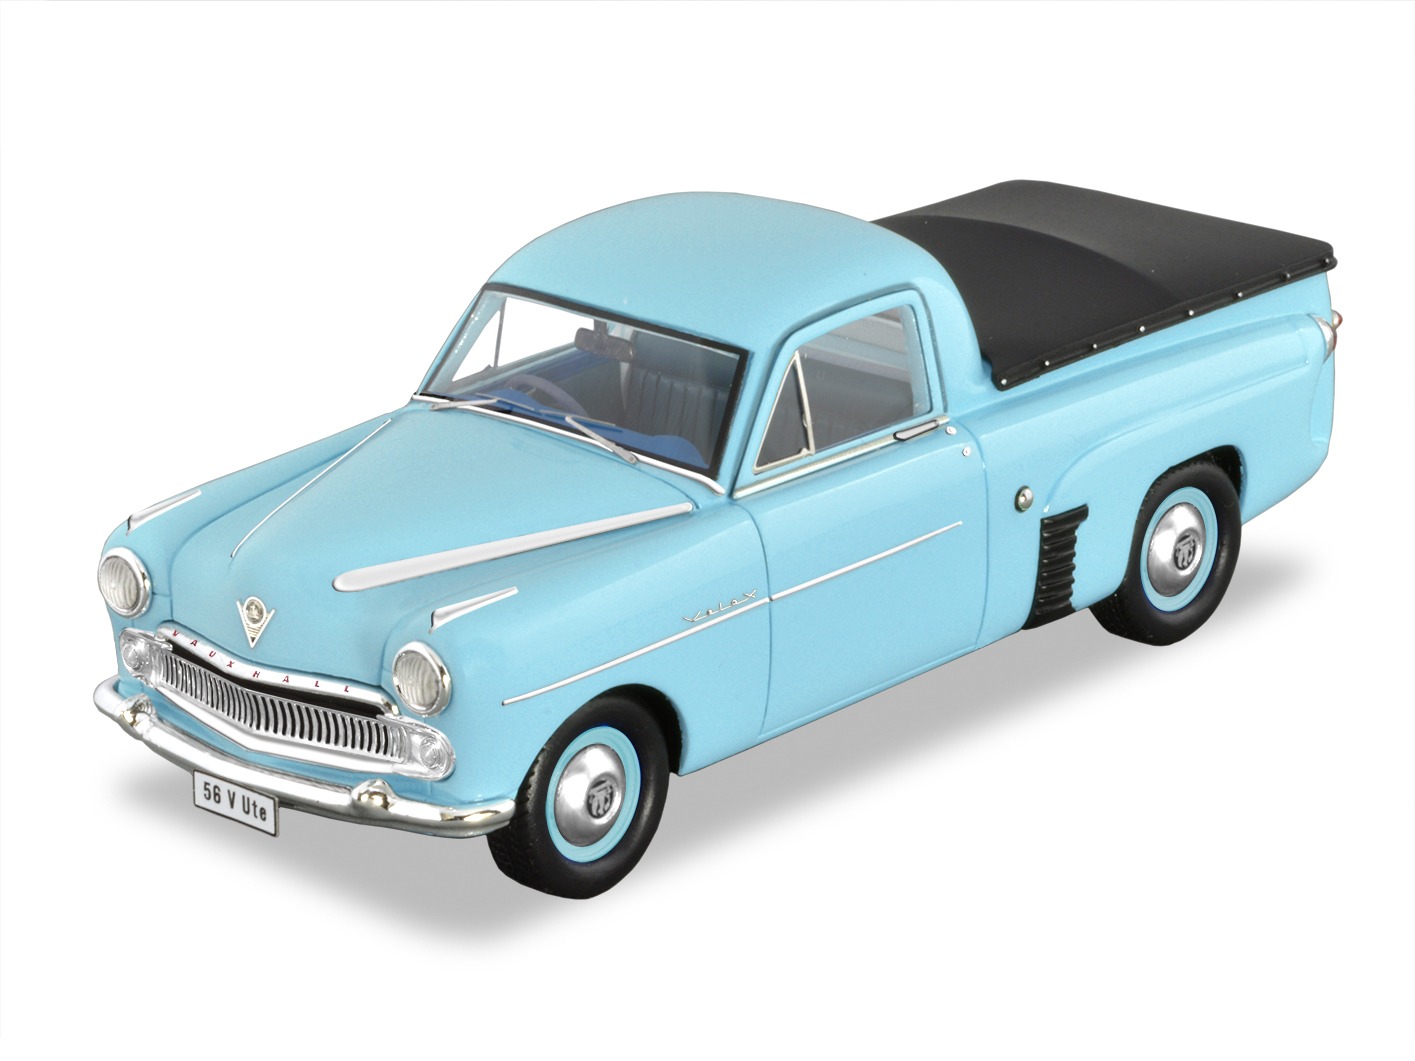 1956 Vauxhall Velox Ute – Blue